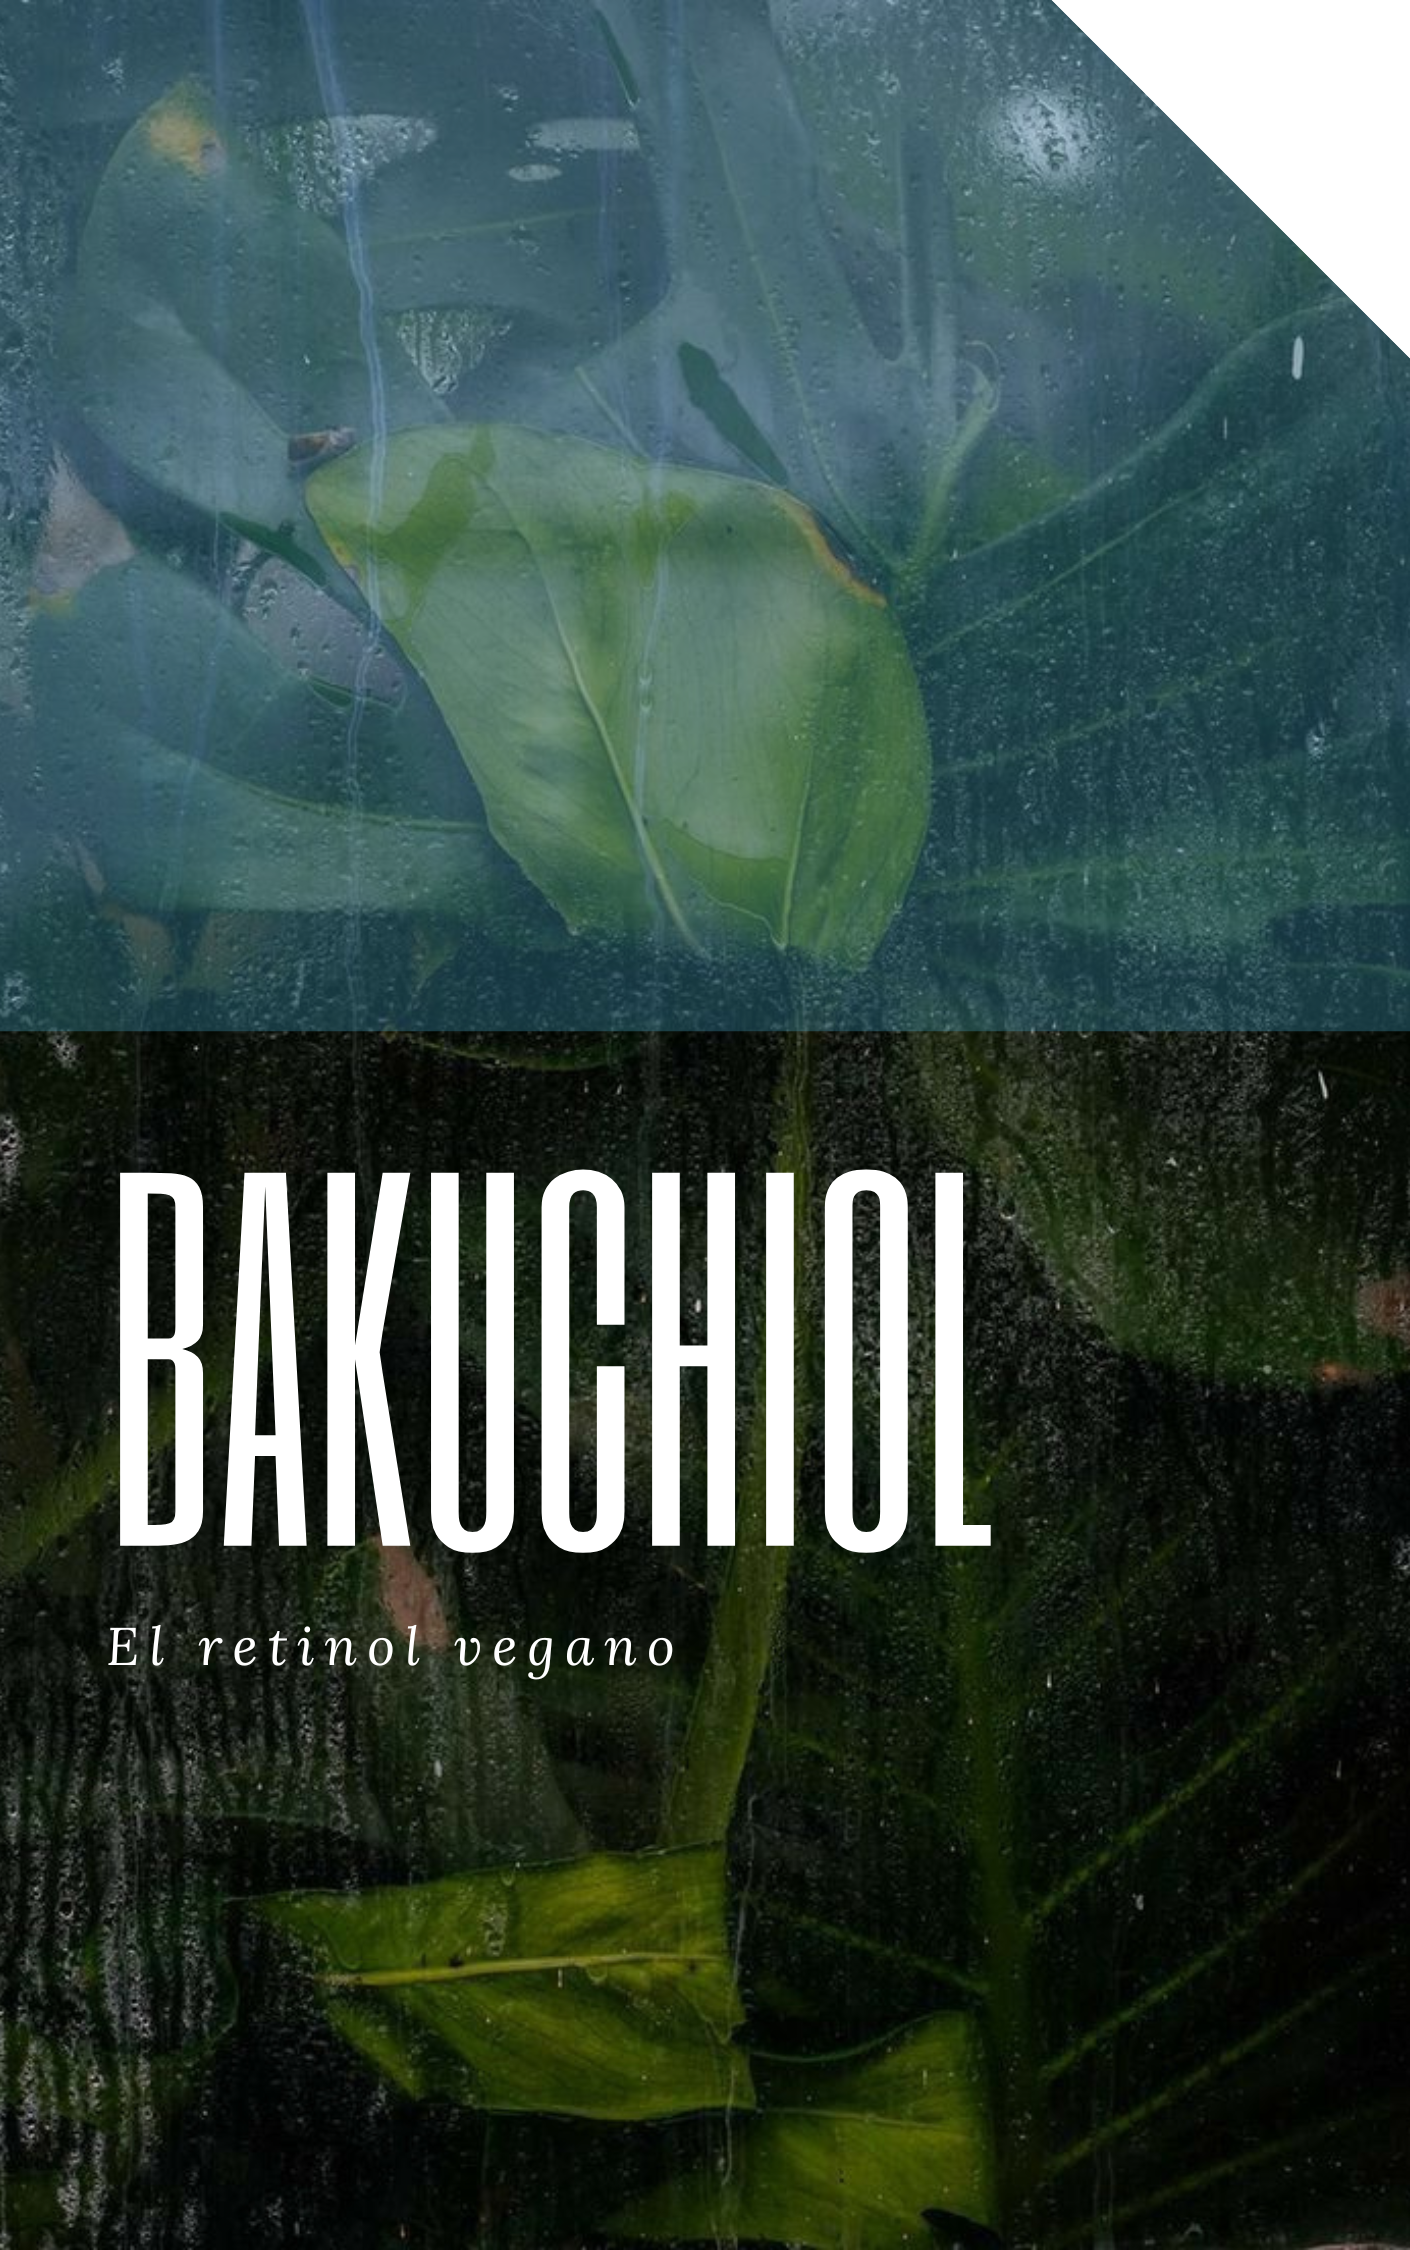 Bakuchiol el retinol natural vegano antiage antimanchas Anti arrugas argentina opinión. Marcas productos